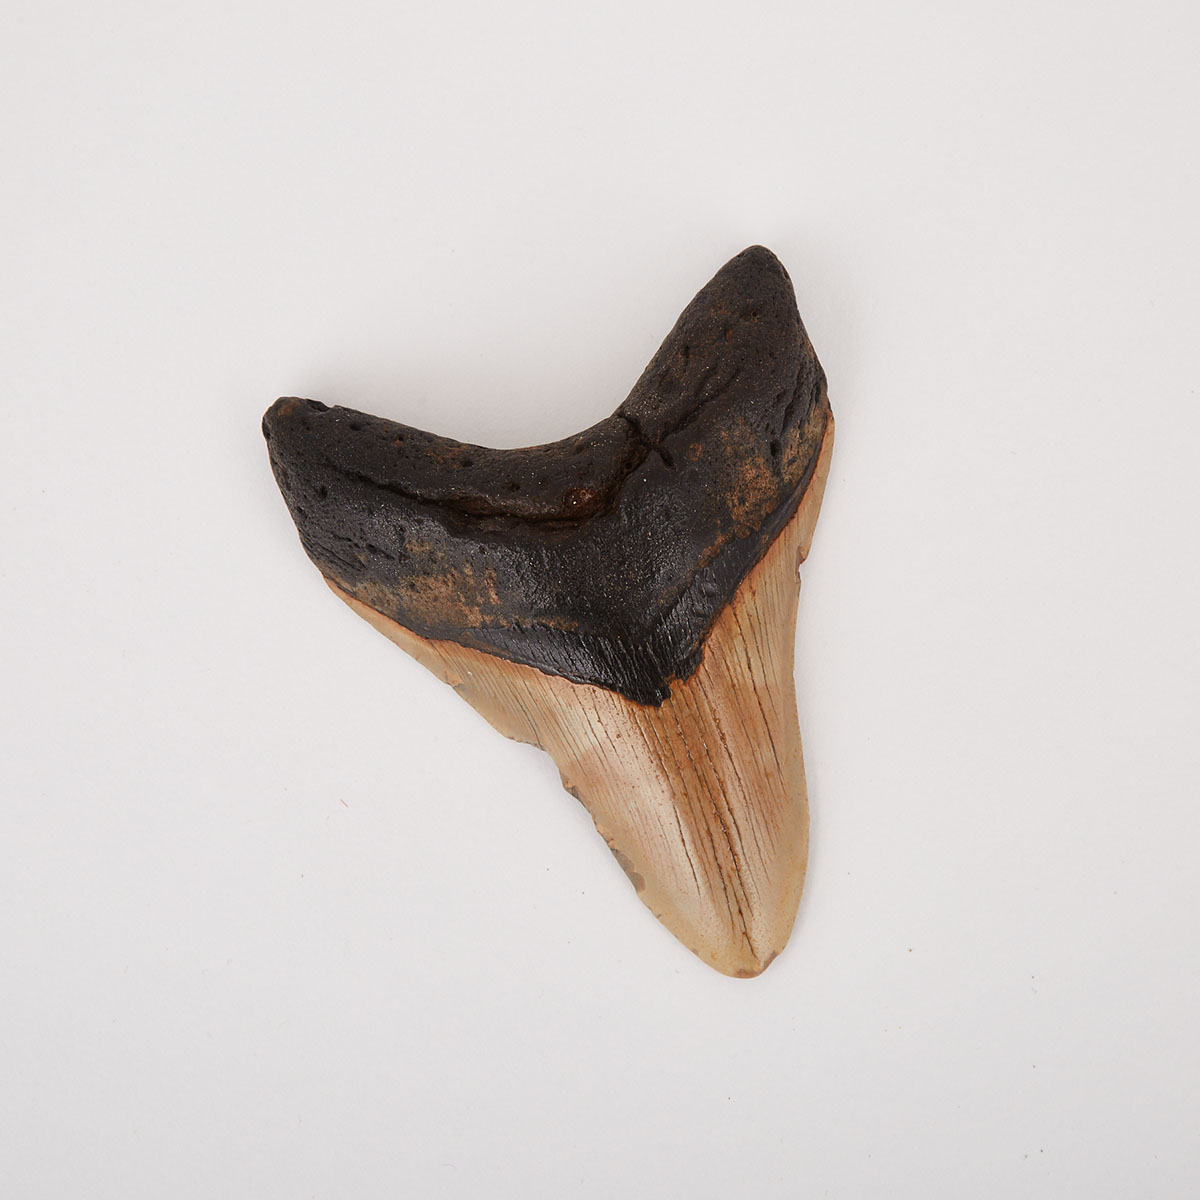 A Petrified Shark’s Tooth